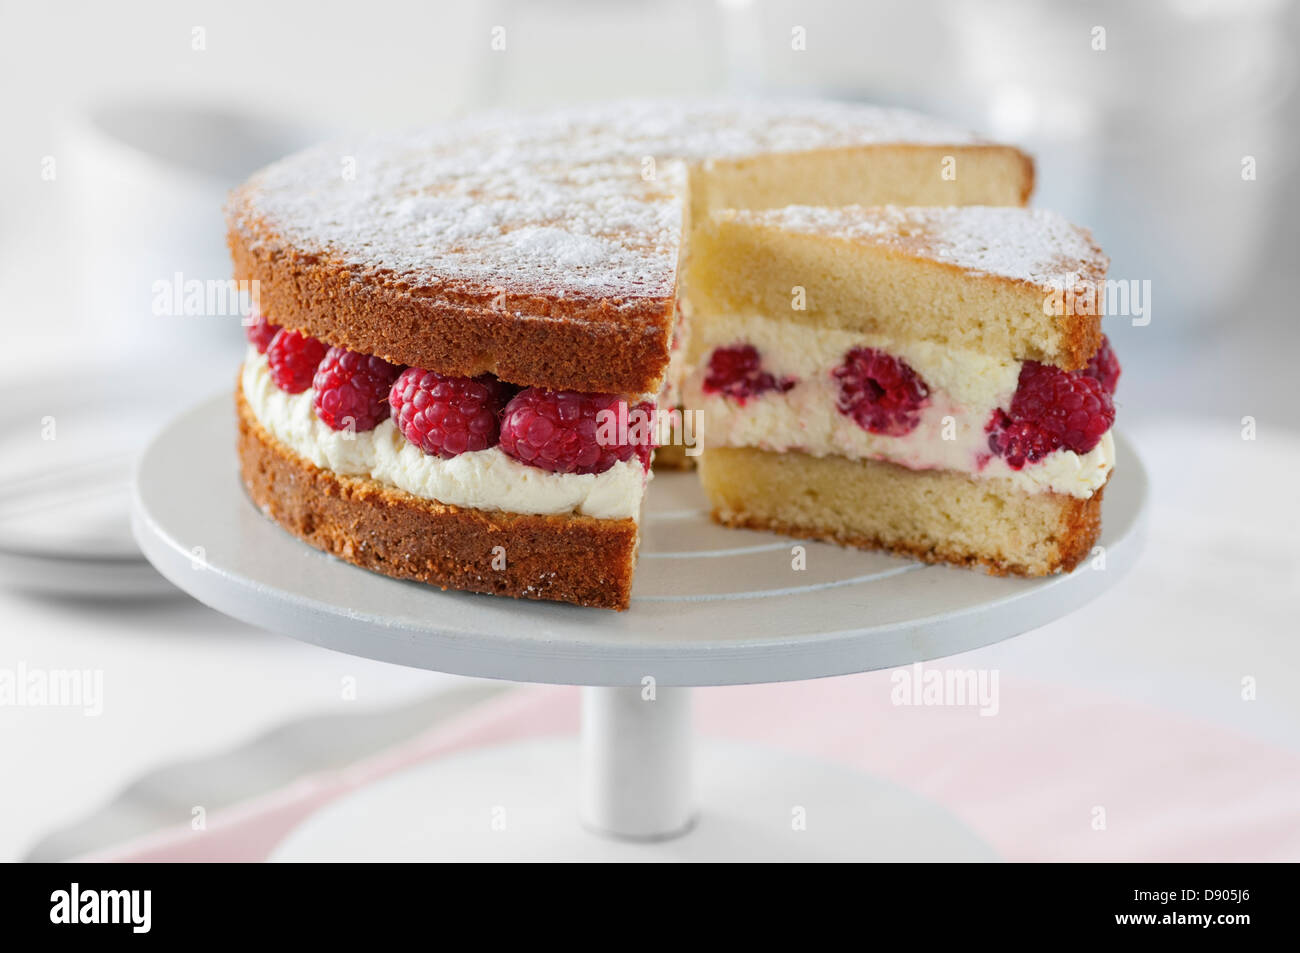 Victoria sponge cake with raspberries and cream Stock Photo